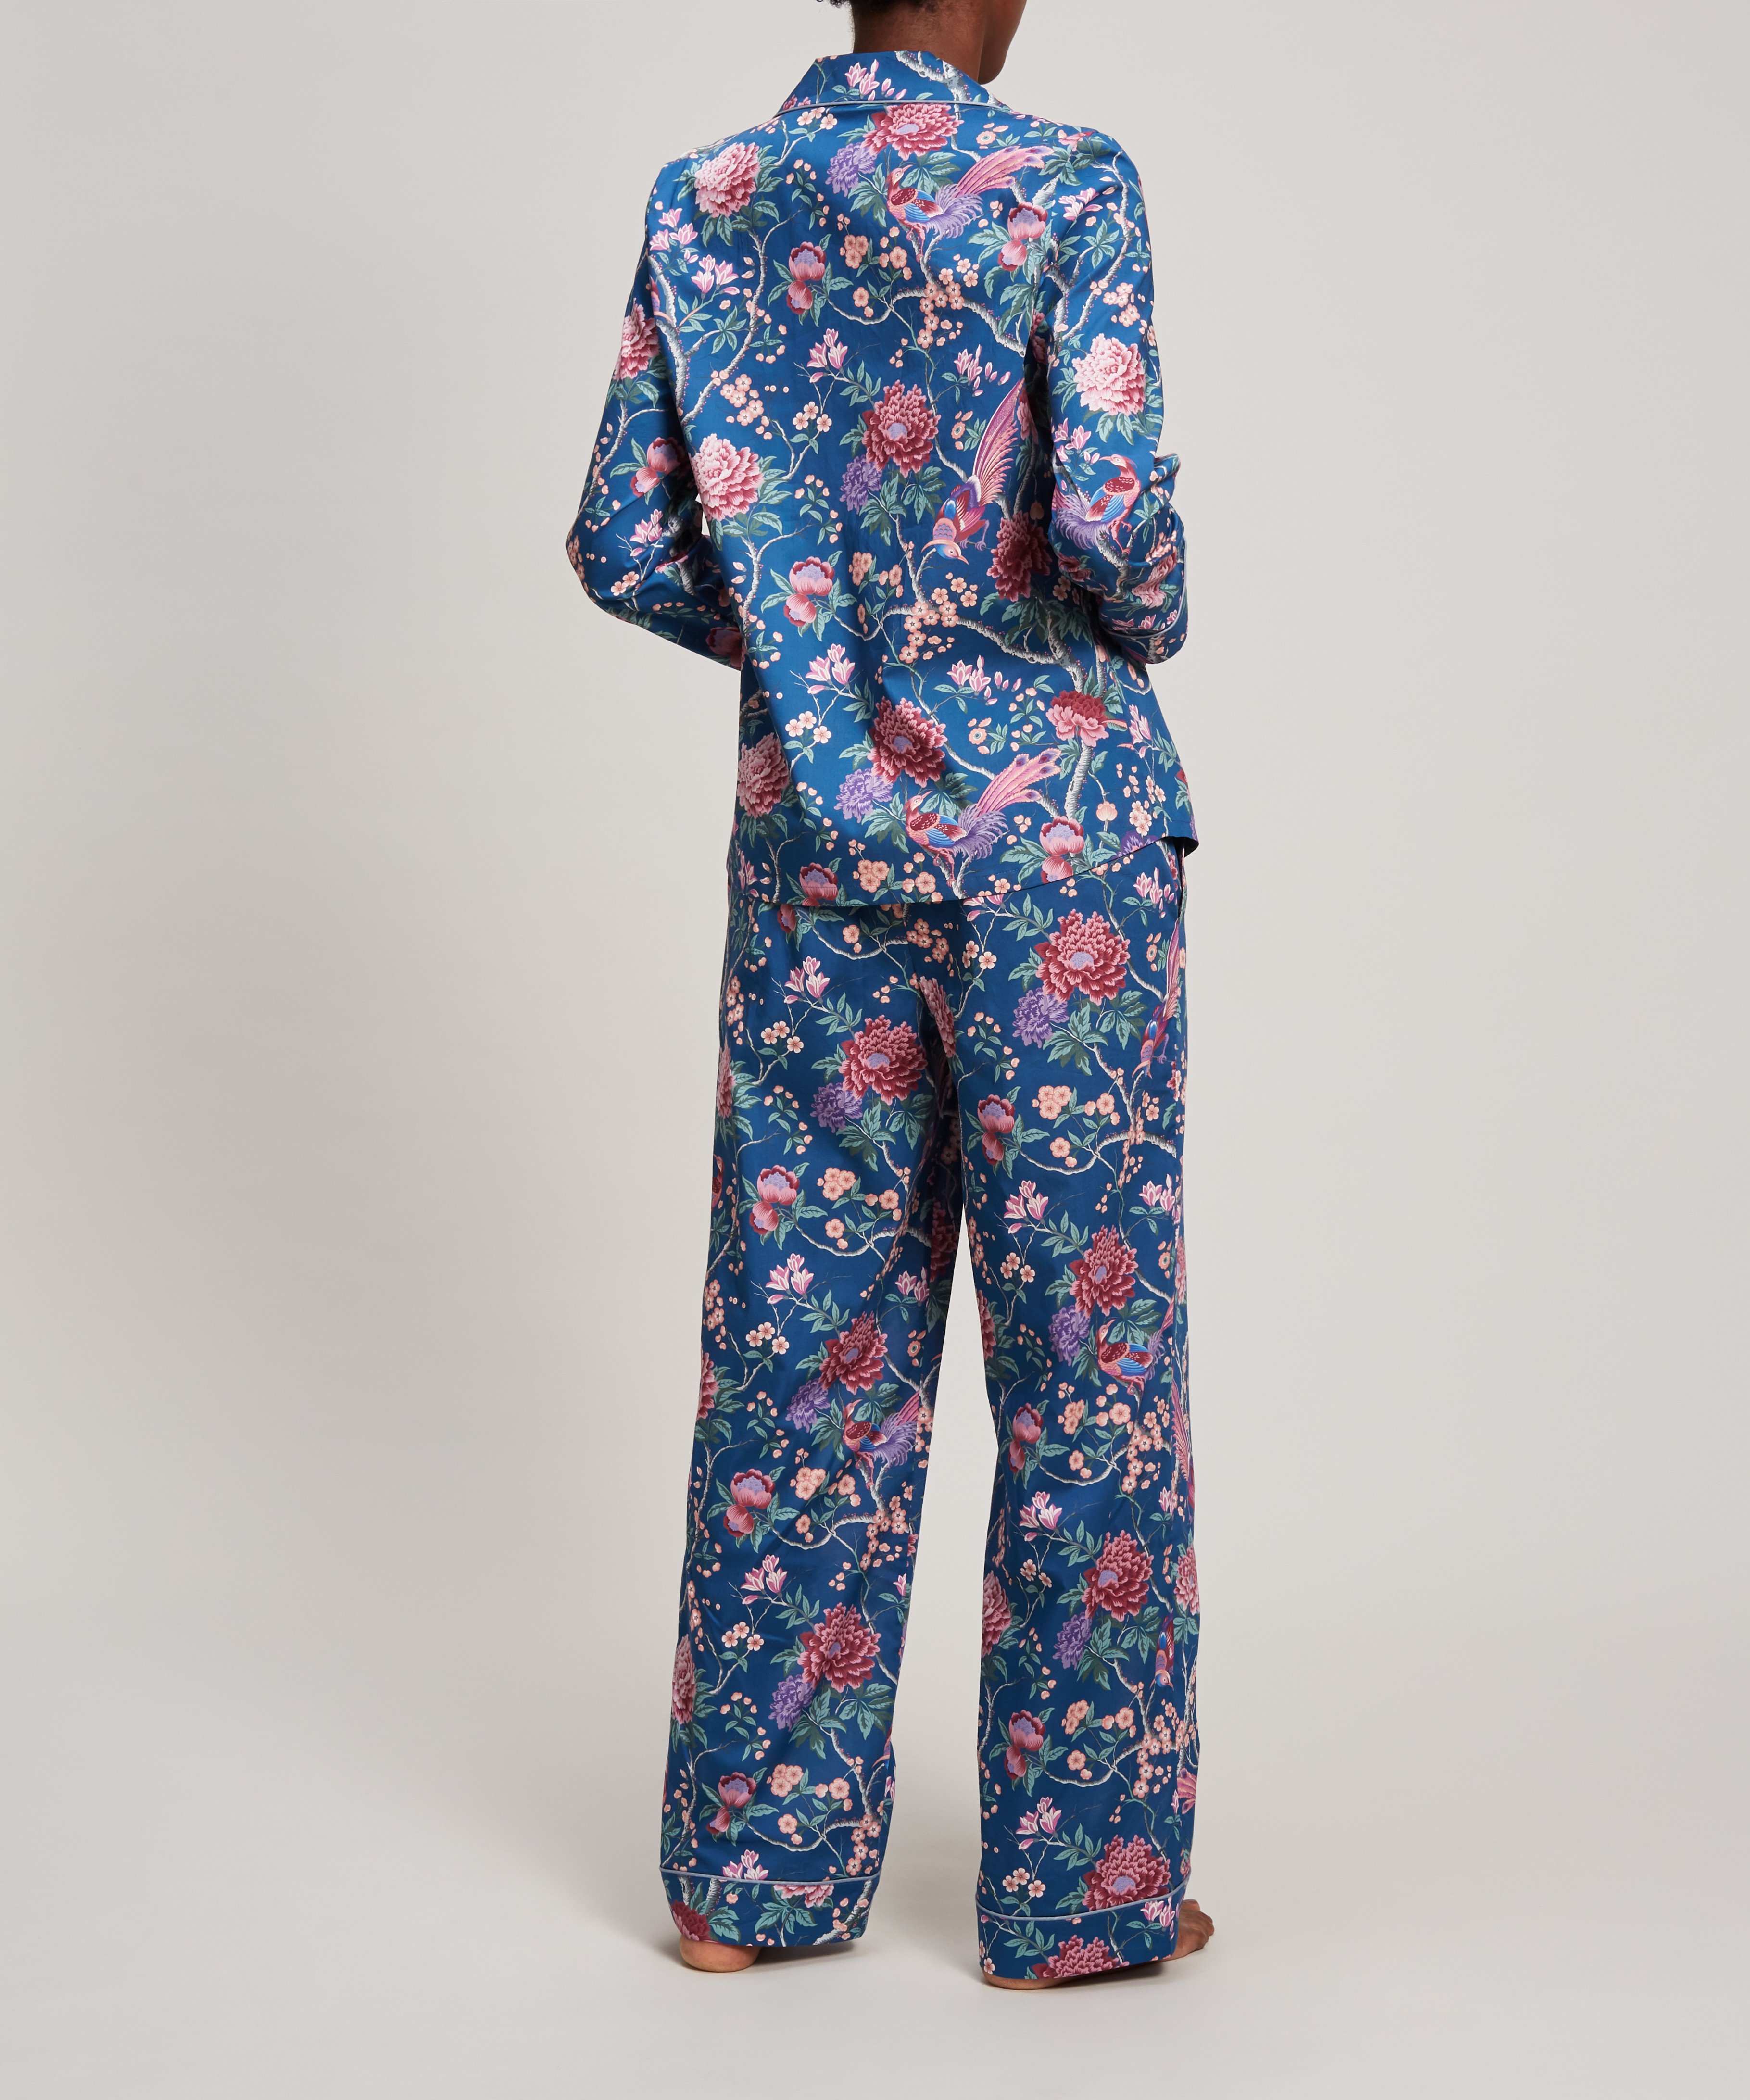 Liberty - Elysian Paradise Tana Lawn™ Cotton Pyjama Set image number 2